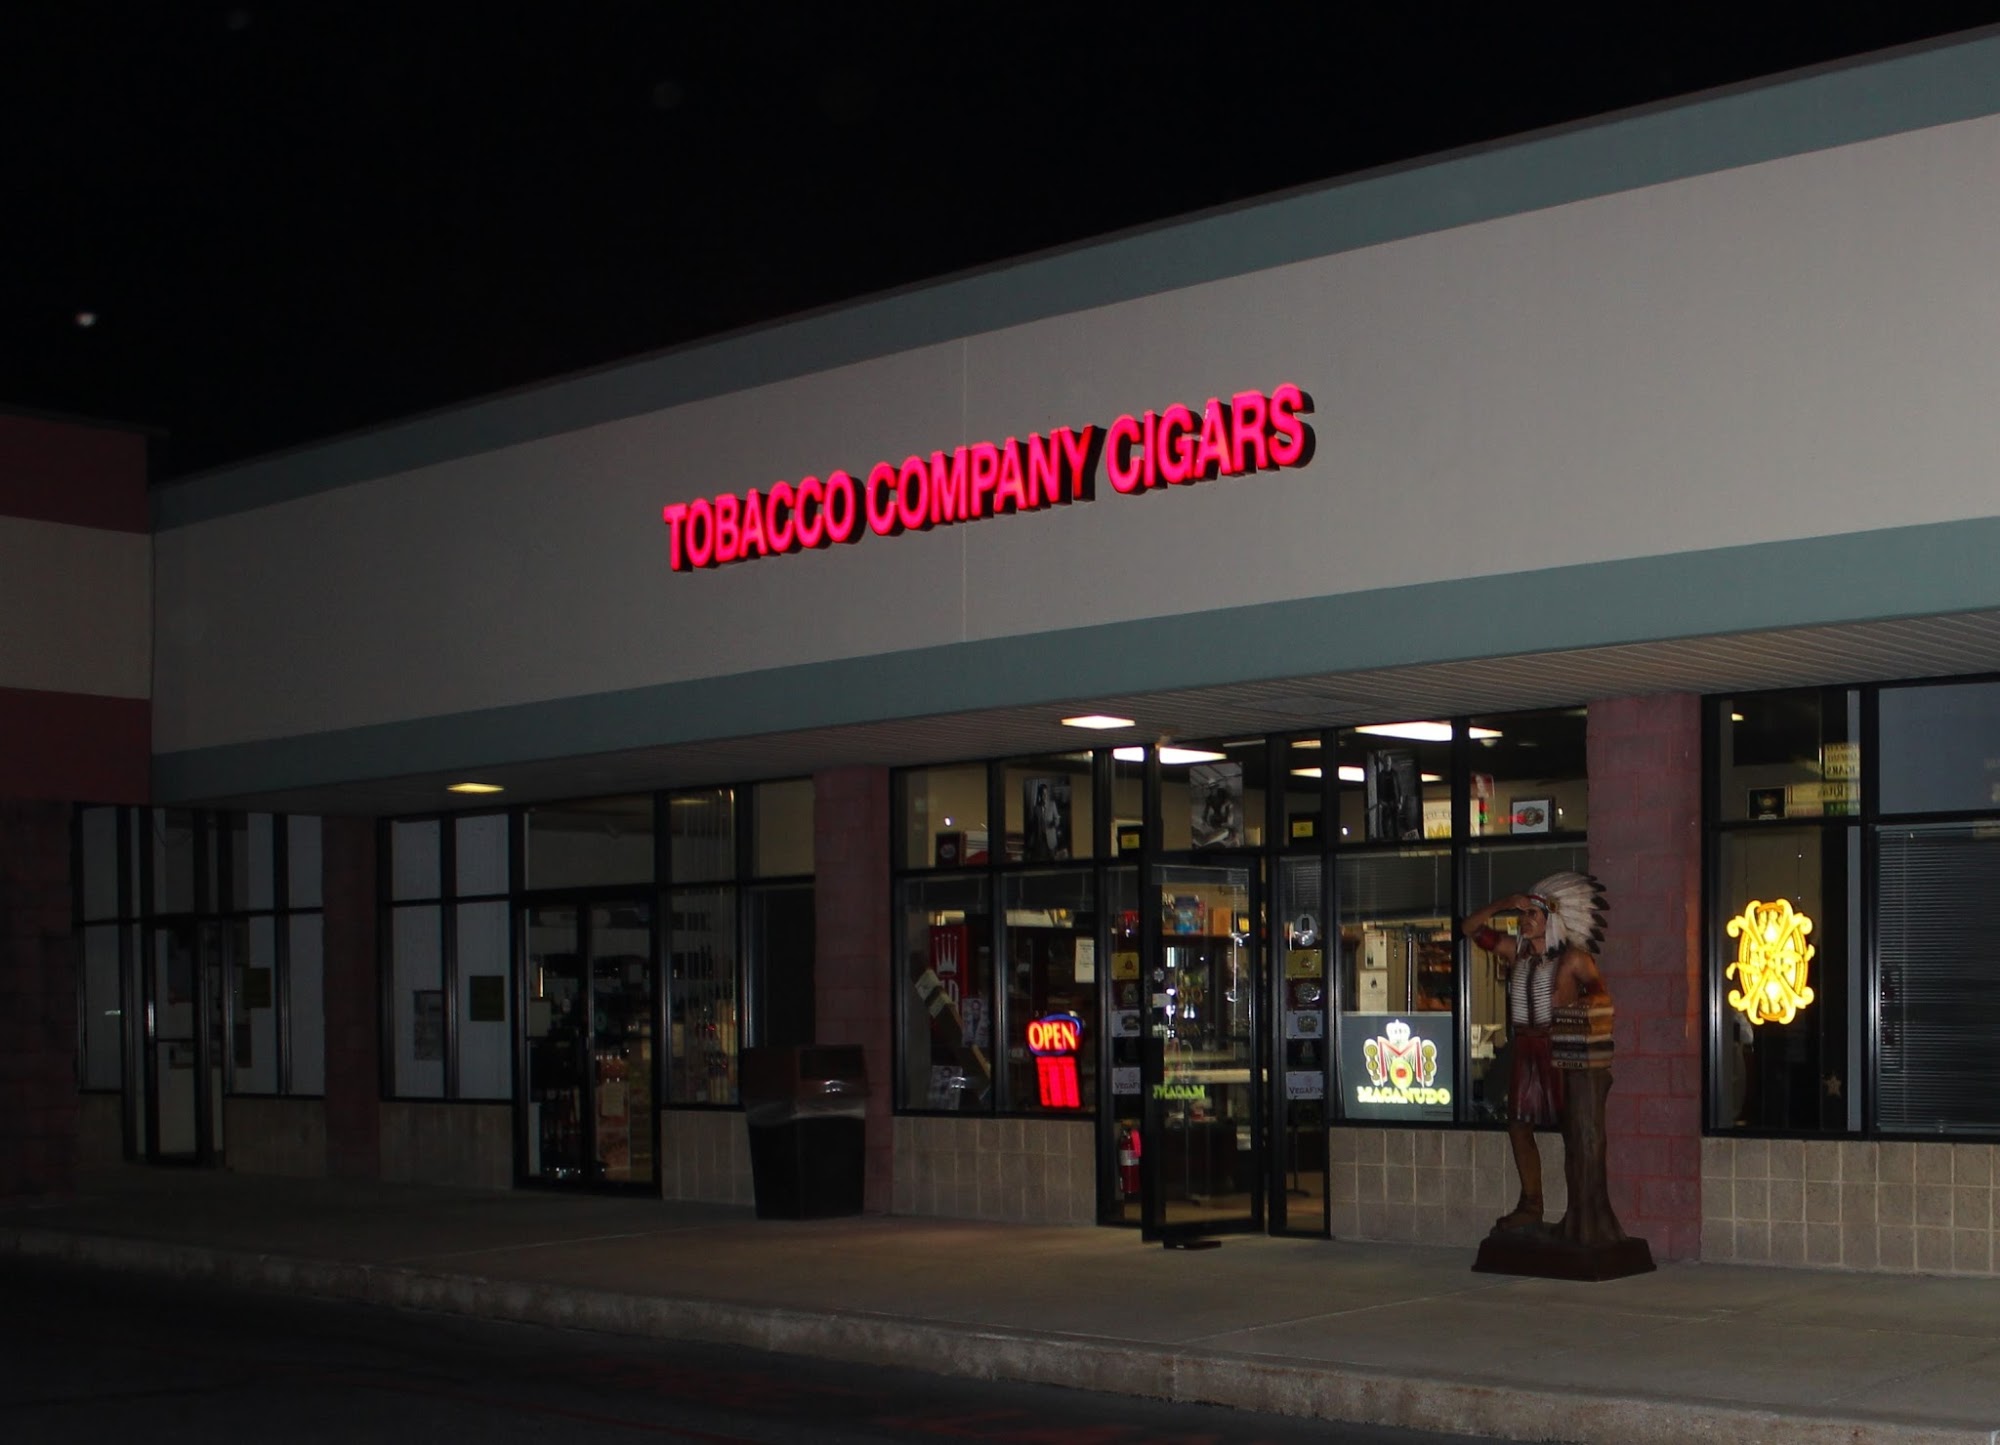 The Tobacco Company